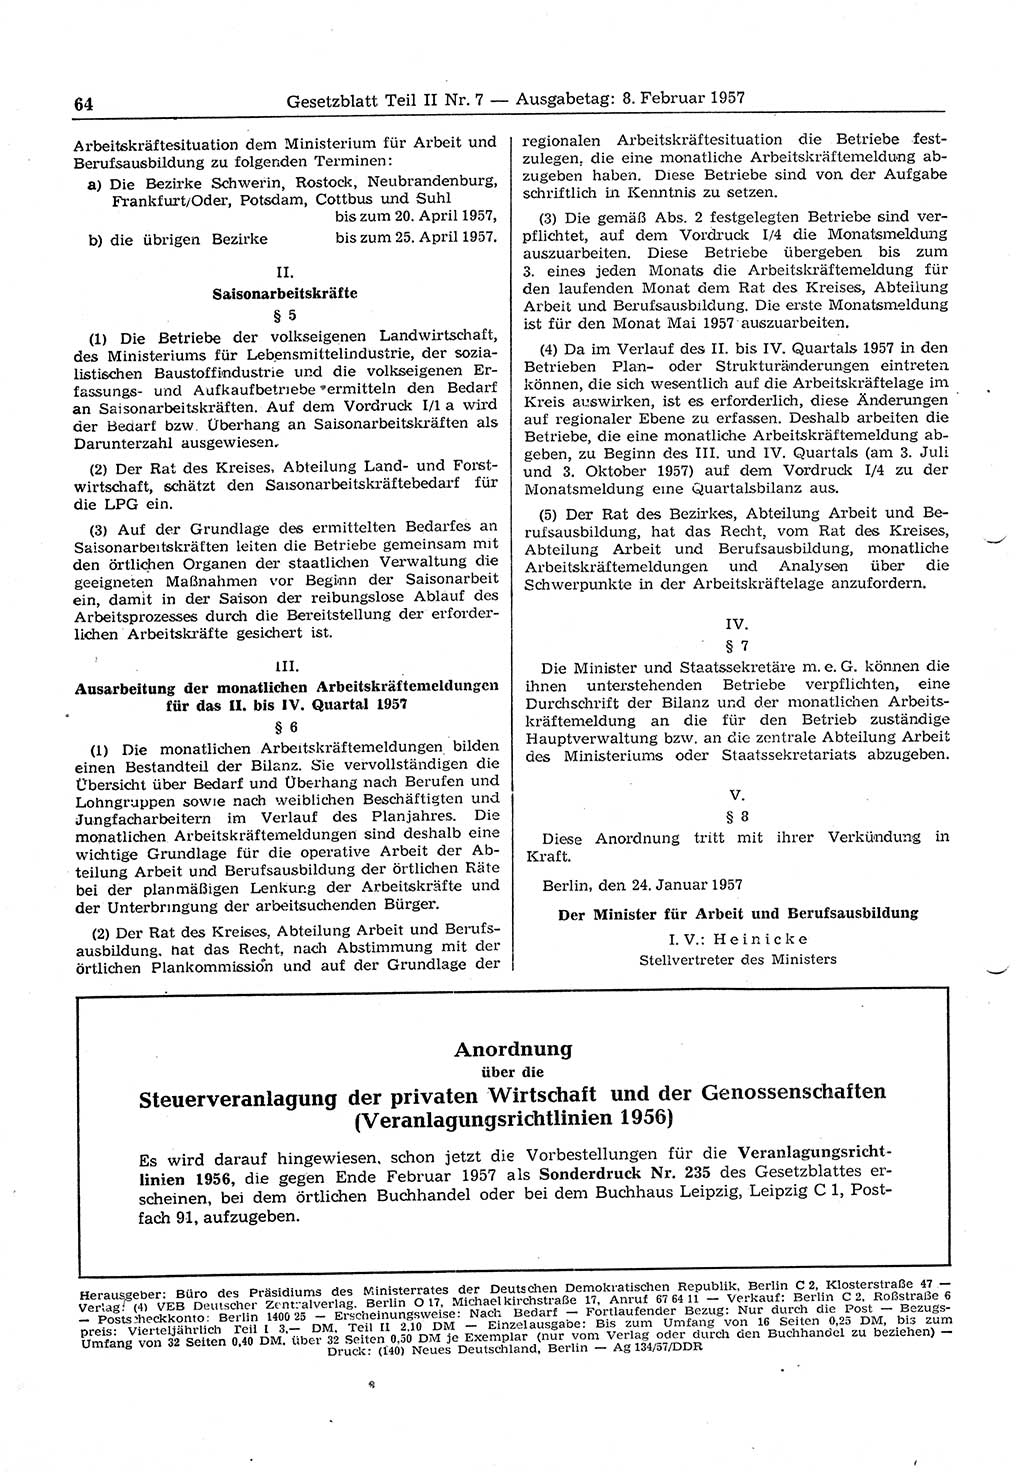 Gesetzblatt (GBl.) der Deutschen Demokratischen Republik (DDR) Teil ⅠⅠ 1957, Seite 64 (GBl. DDR ⅠⅠ 1957, S. 64)